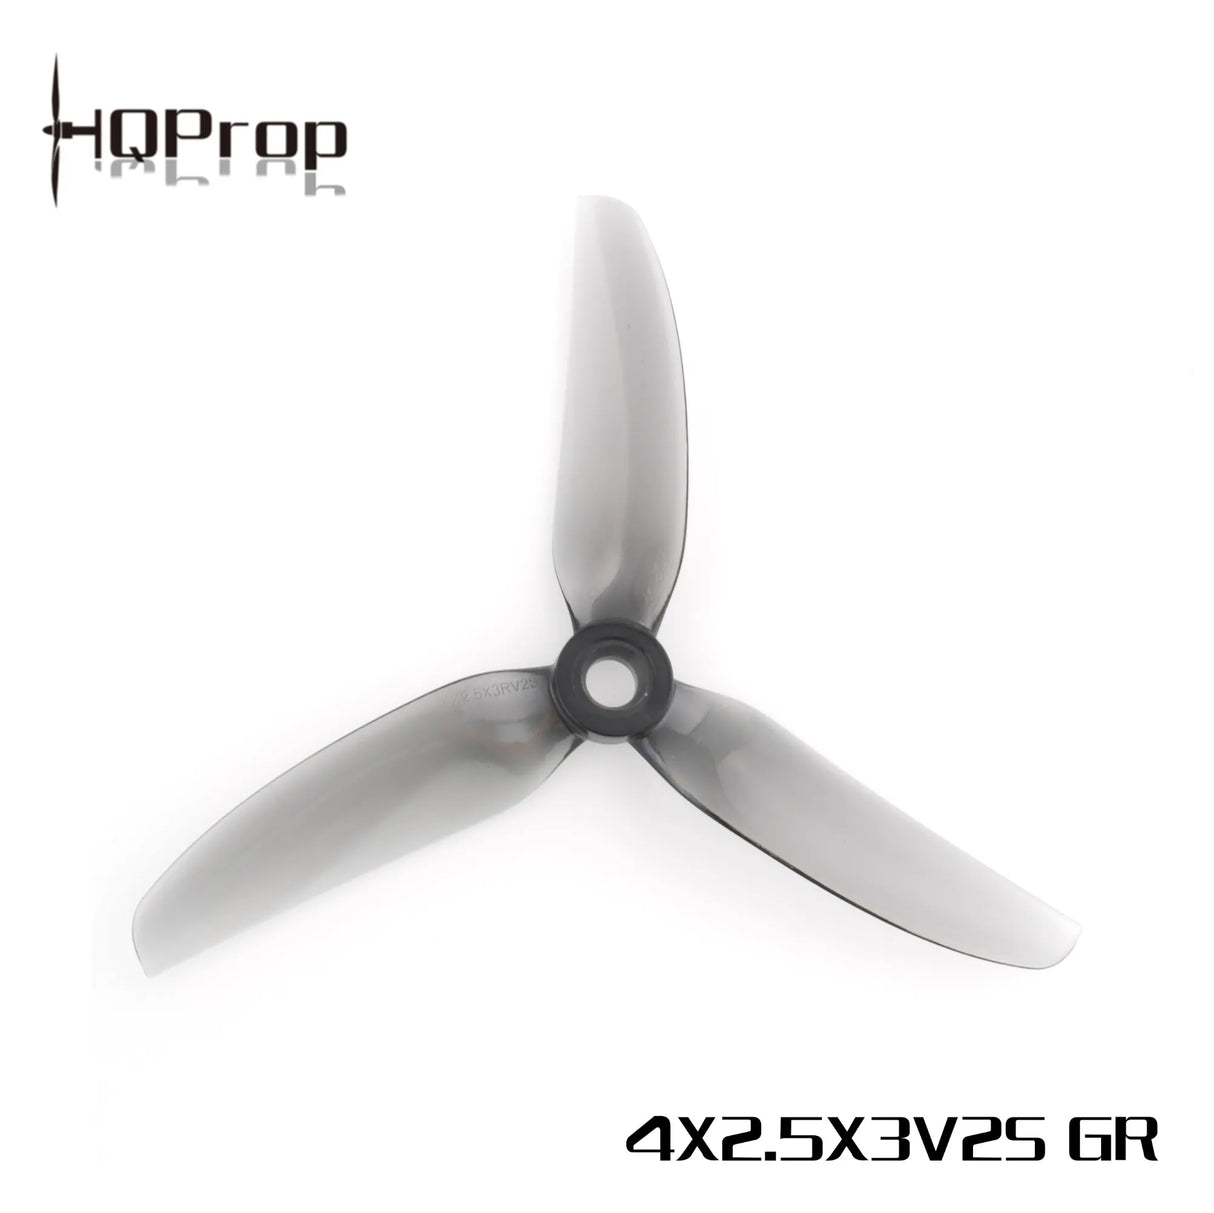 HQProp 4X2.5X3V2S - DroneDynamics.ca